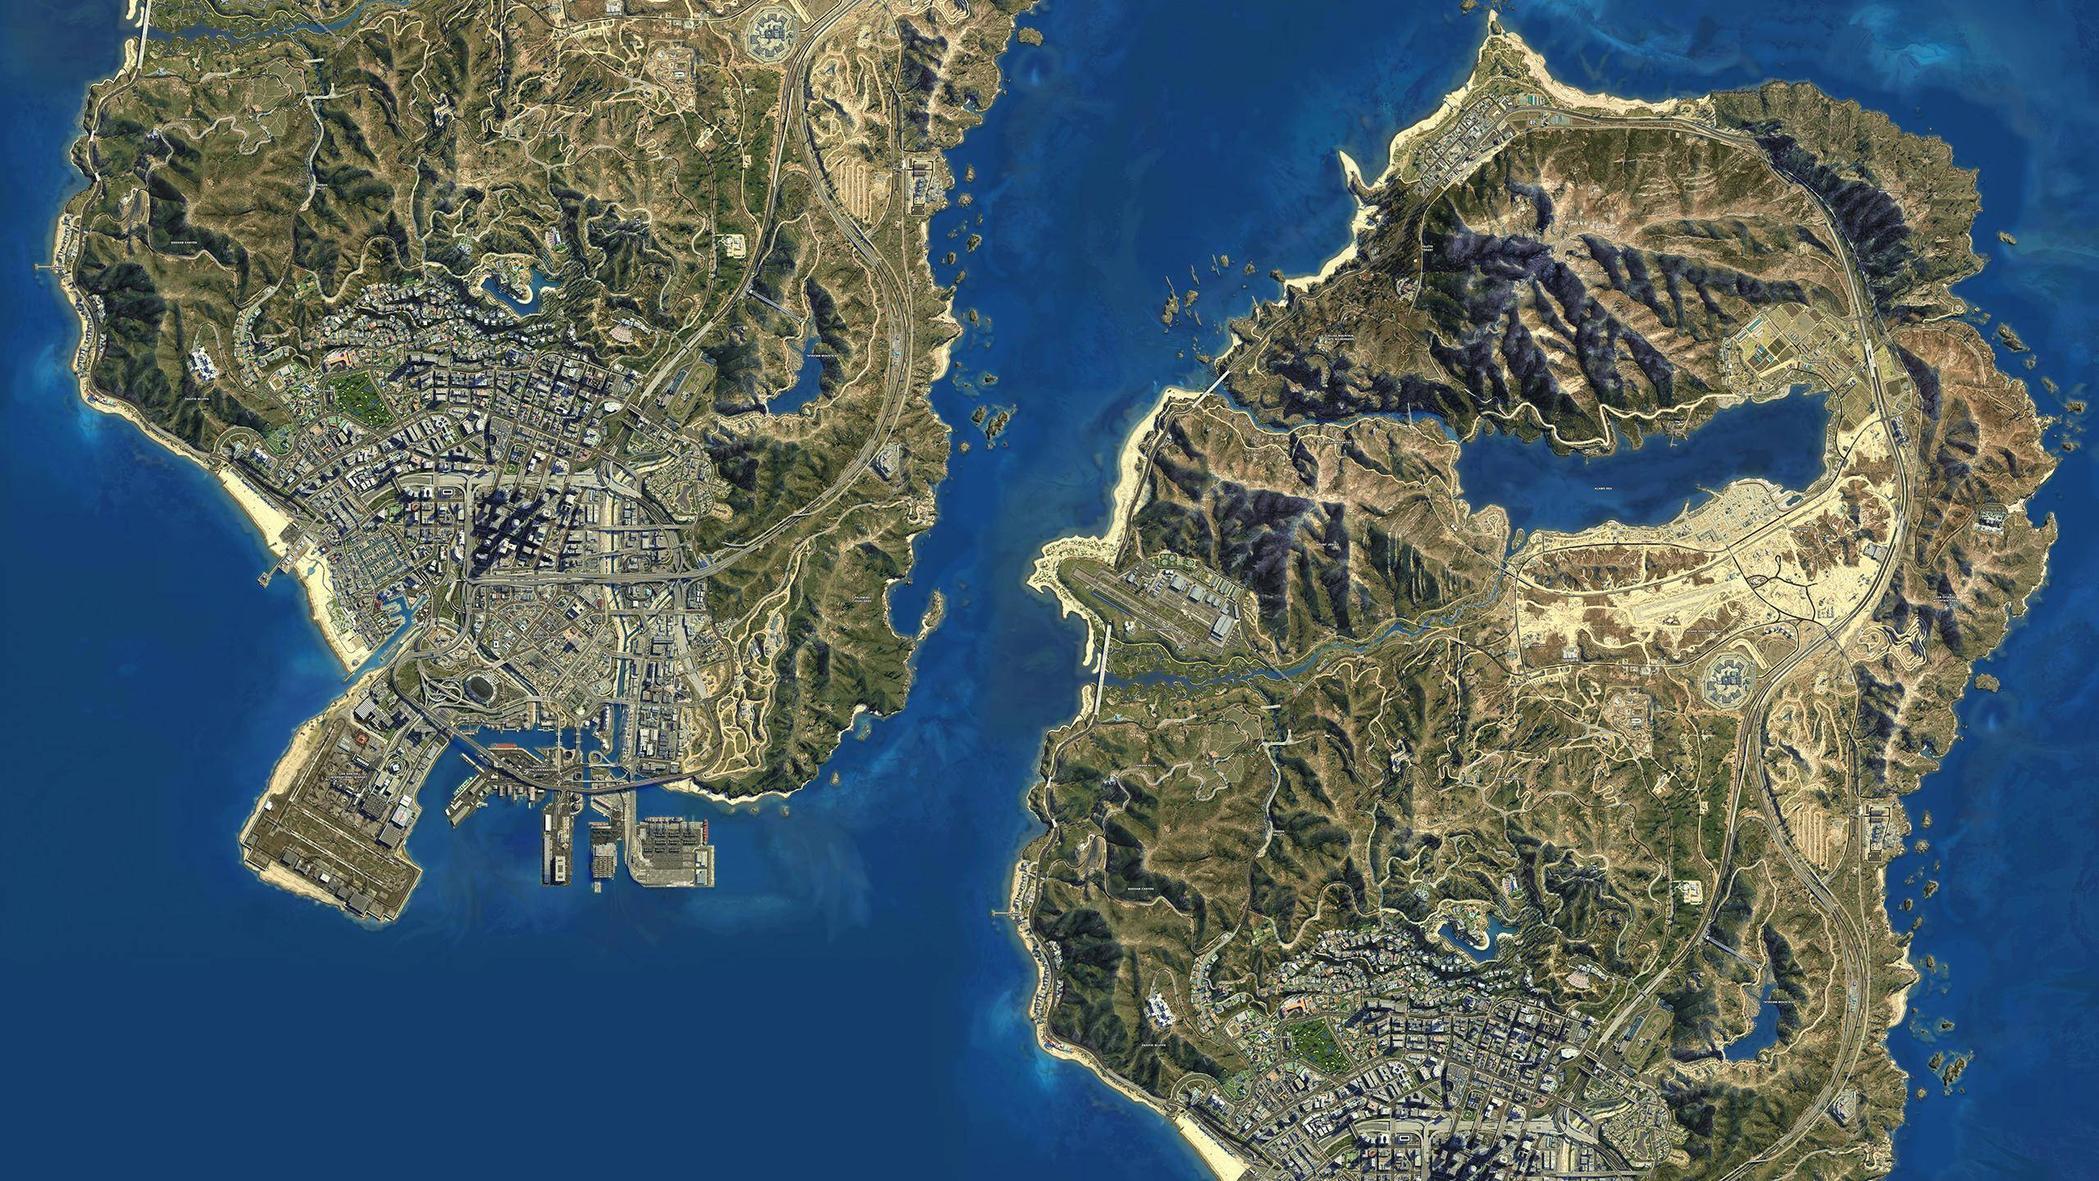 Muốn tạo điểm nhấn mới mẻ cho màn hình của bạn? Hãy sử dụng hình nền bản đồ GTA V để có một góc nhìn đặc biệt và sắc nét về vùng đất Los Santos và Blaine County. Với độ phân giải cao và chất lượng hình ảnh tuyệt đẹp, bạn sẽ không thể rời mắt khỏi màn hình thiết bị của mình.